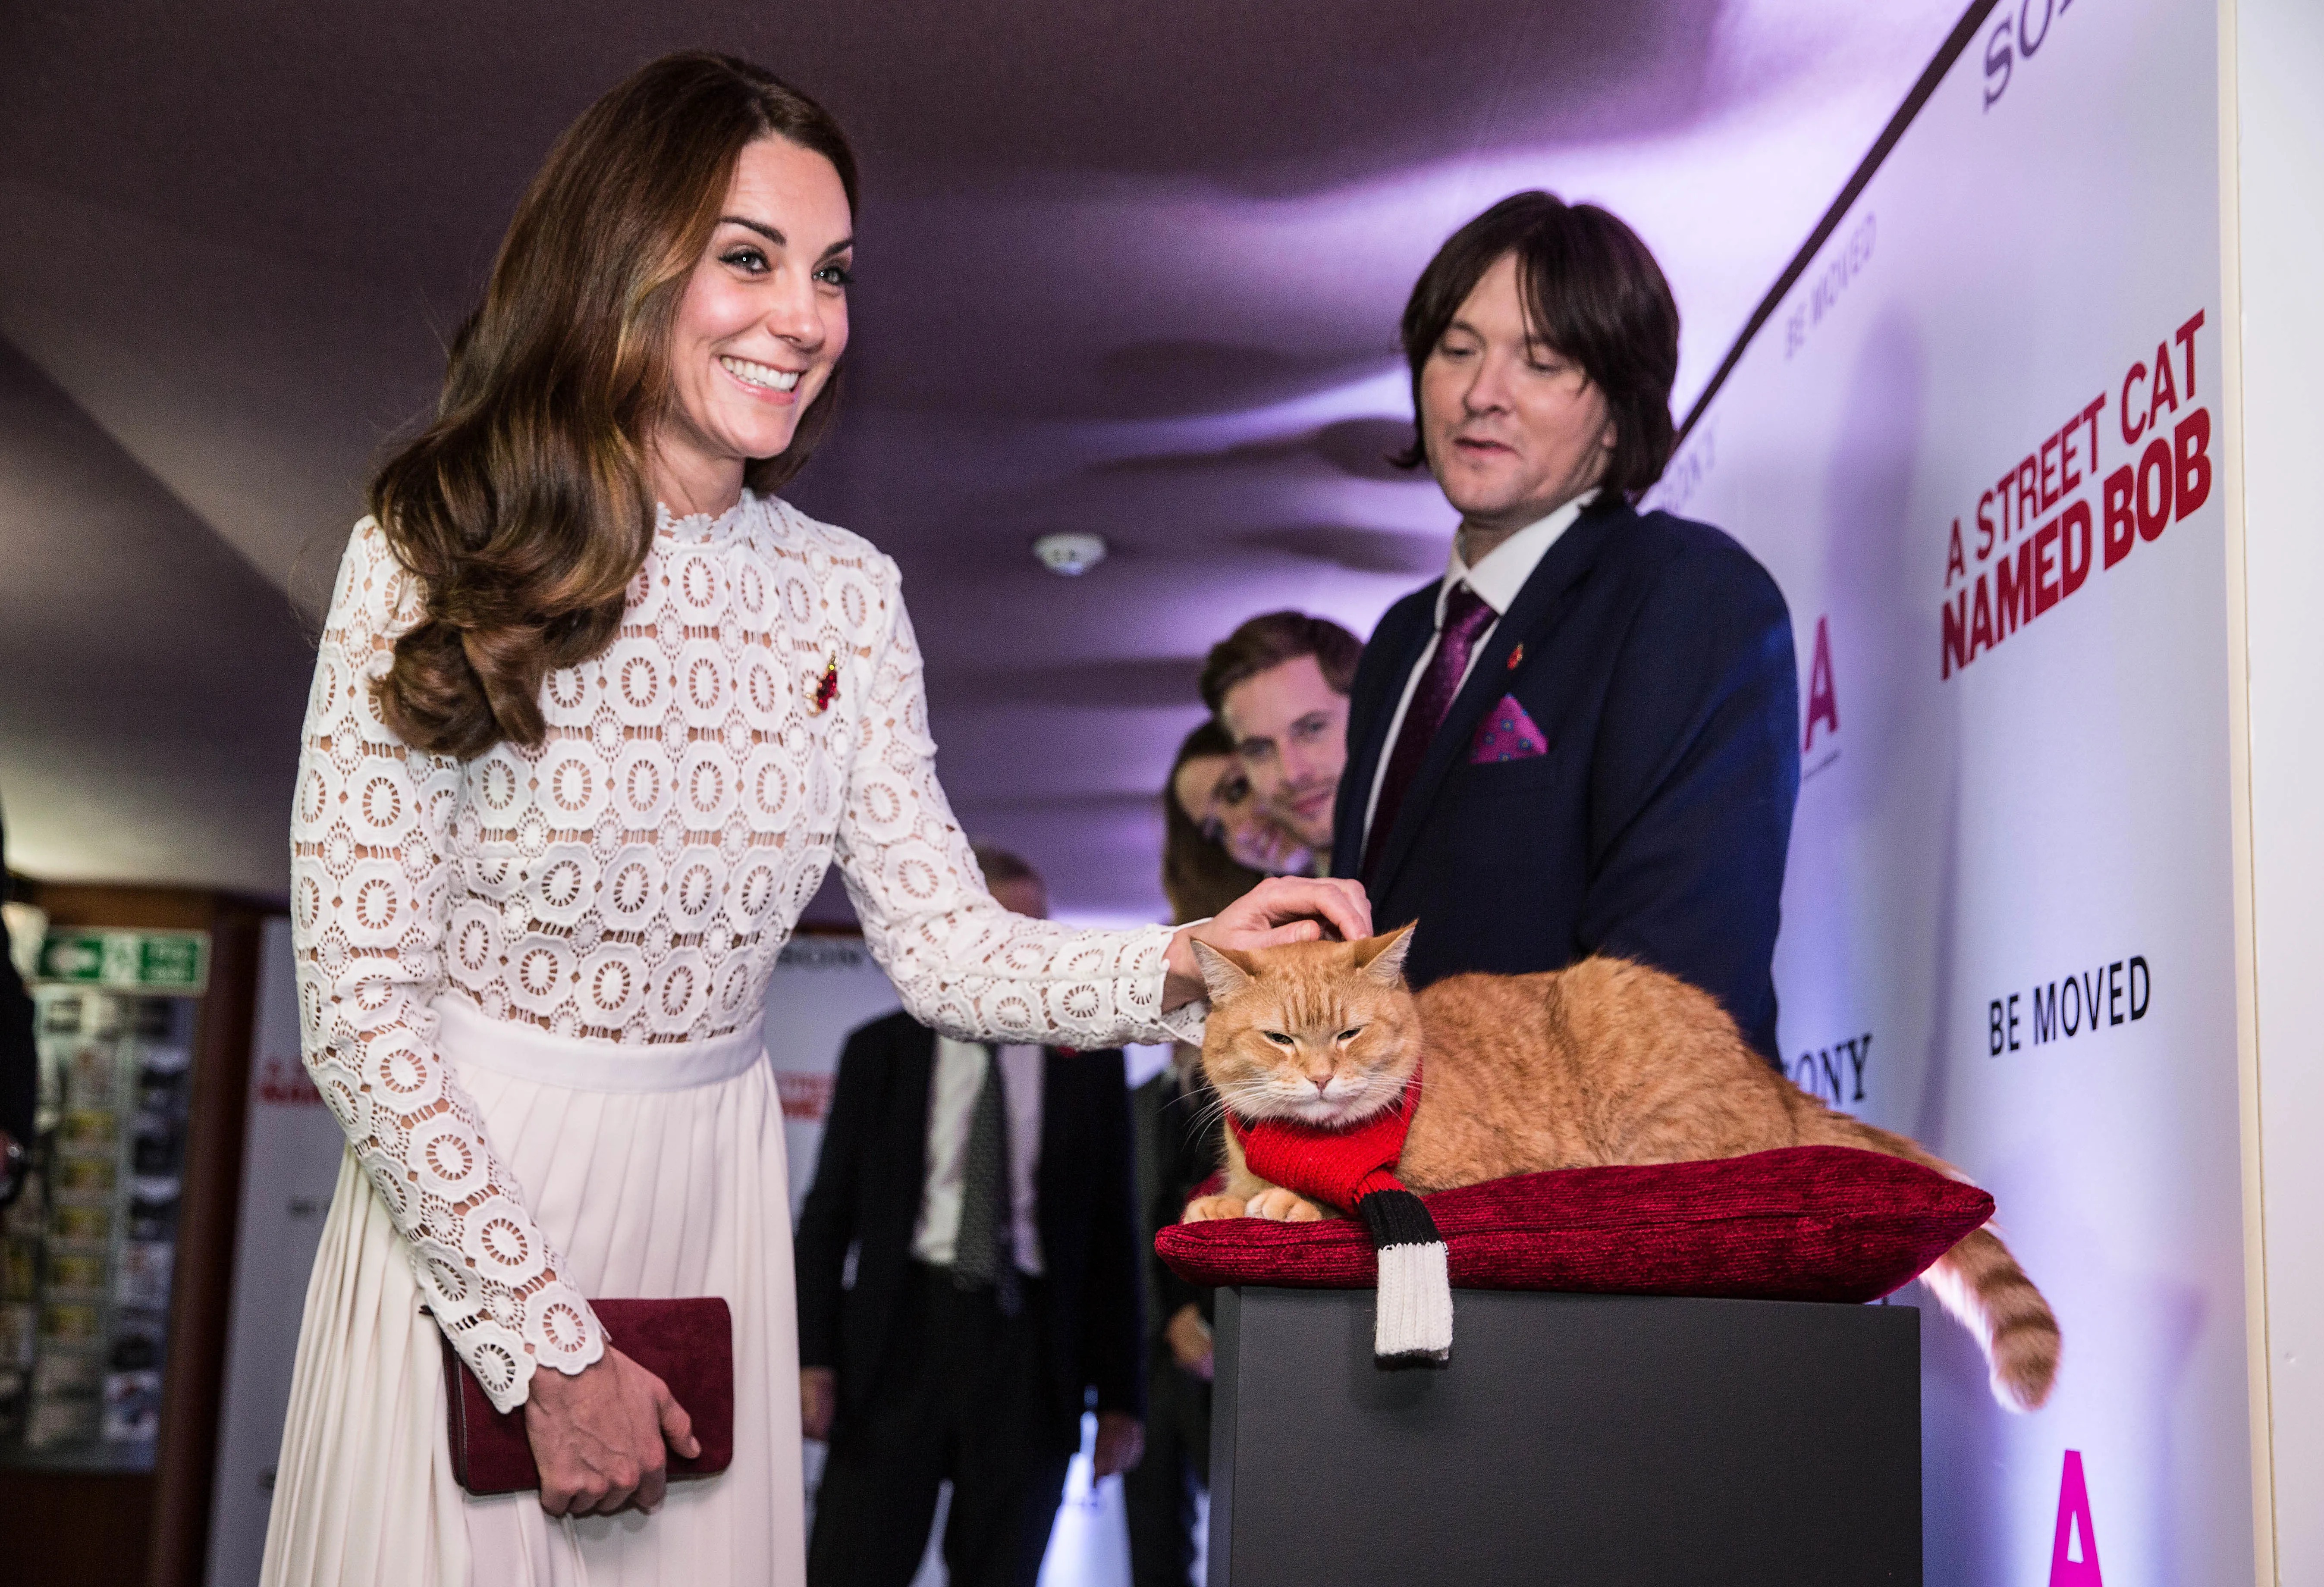 Bob und James trafen Kate Middleton bei der Filmpremiere